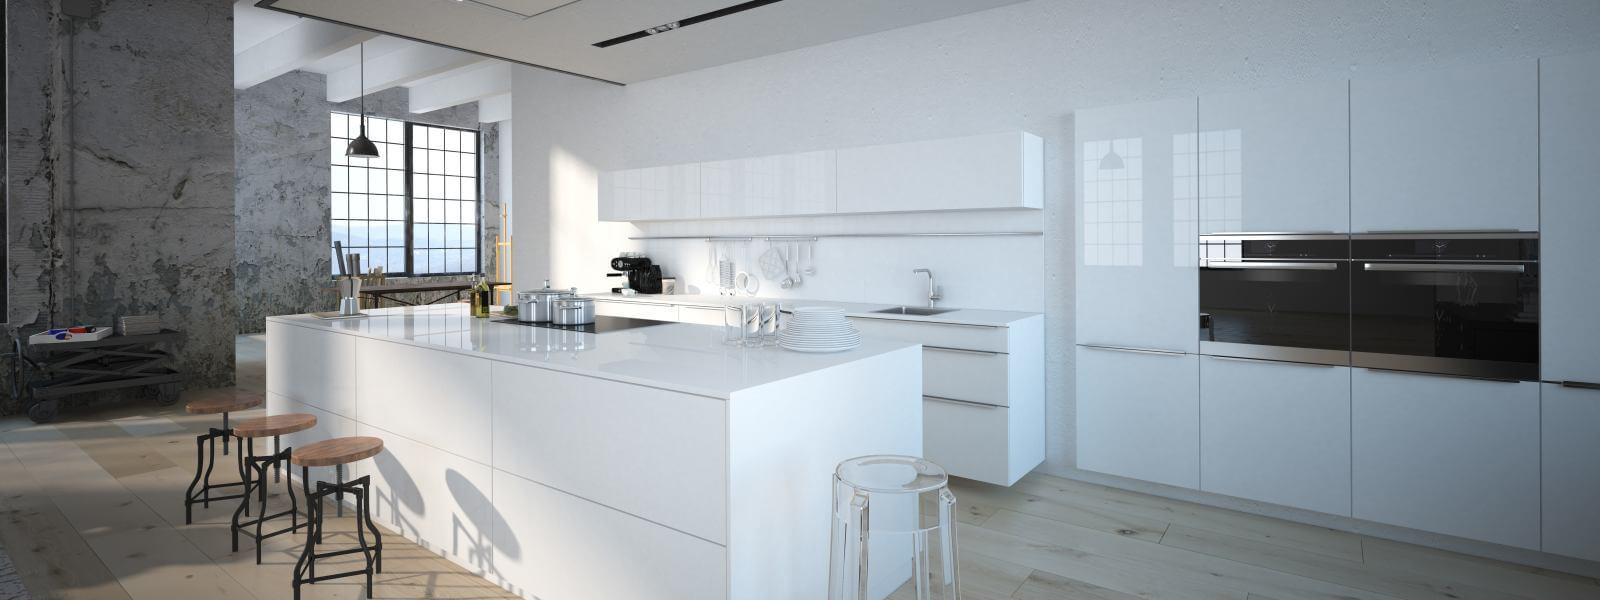 The modern kitchen interior design. 3d rendering